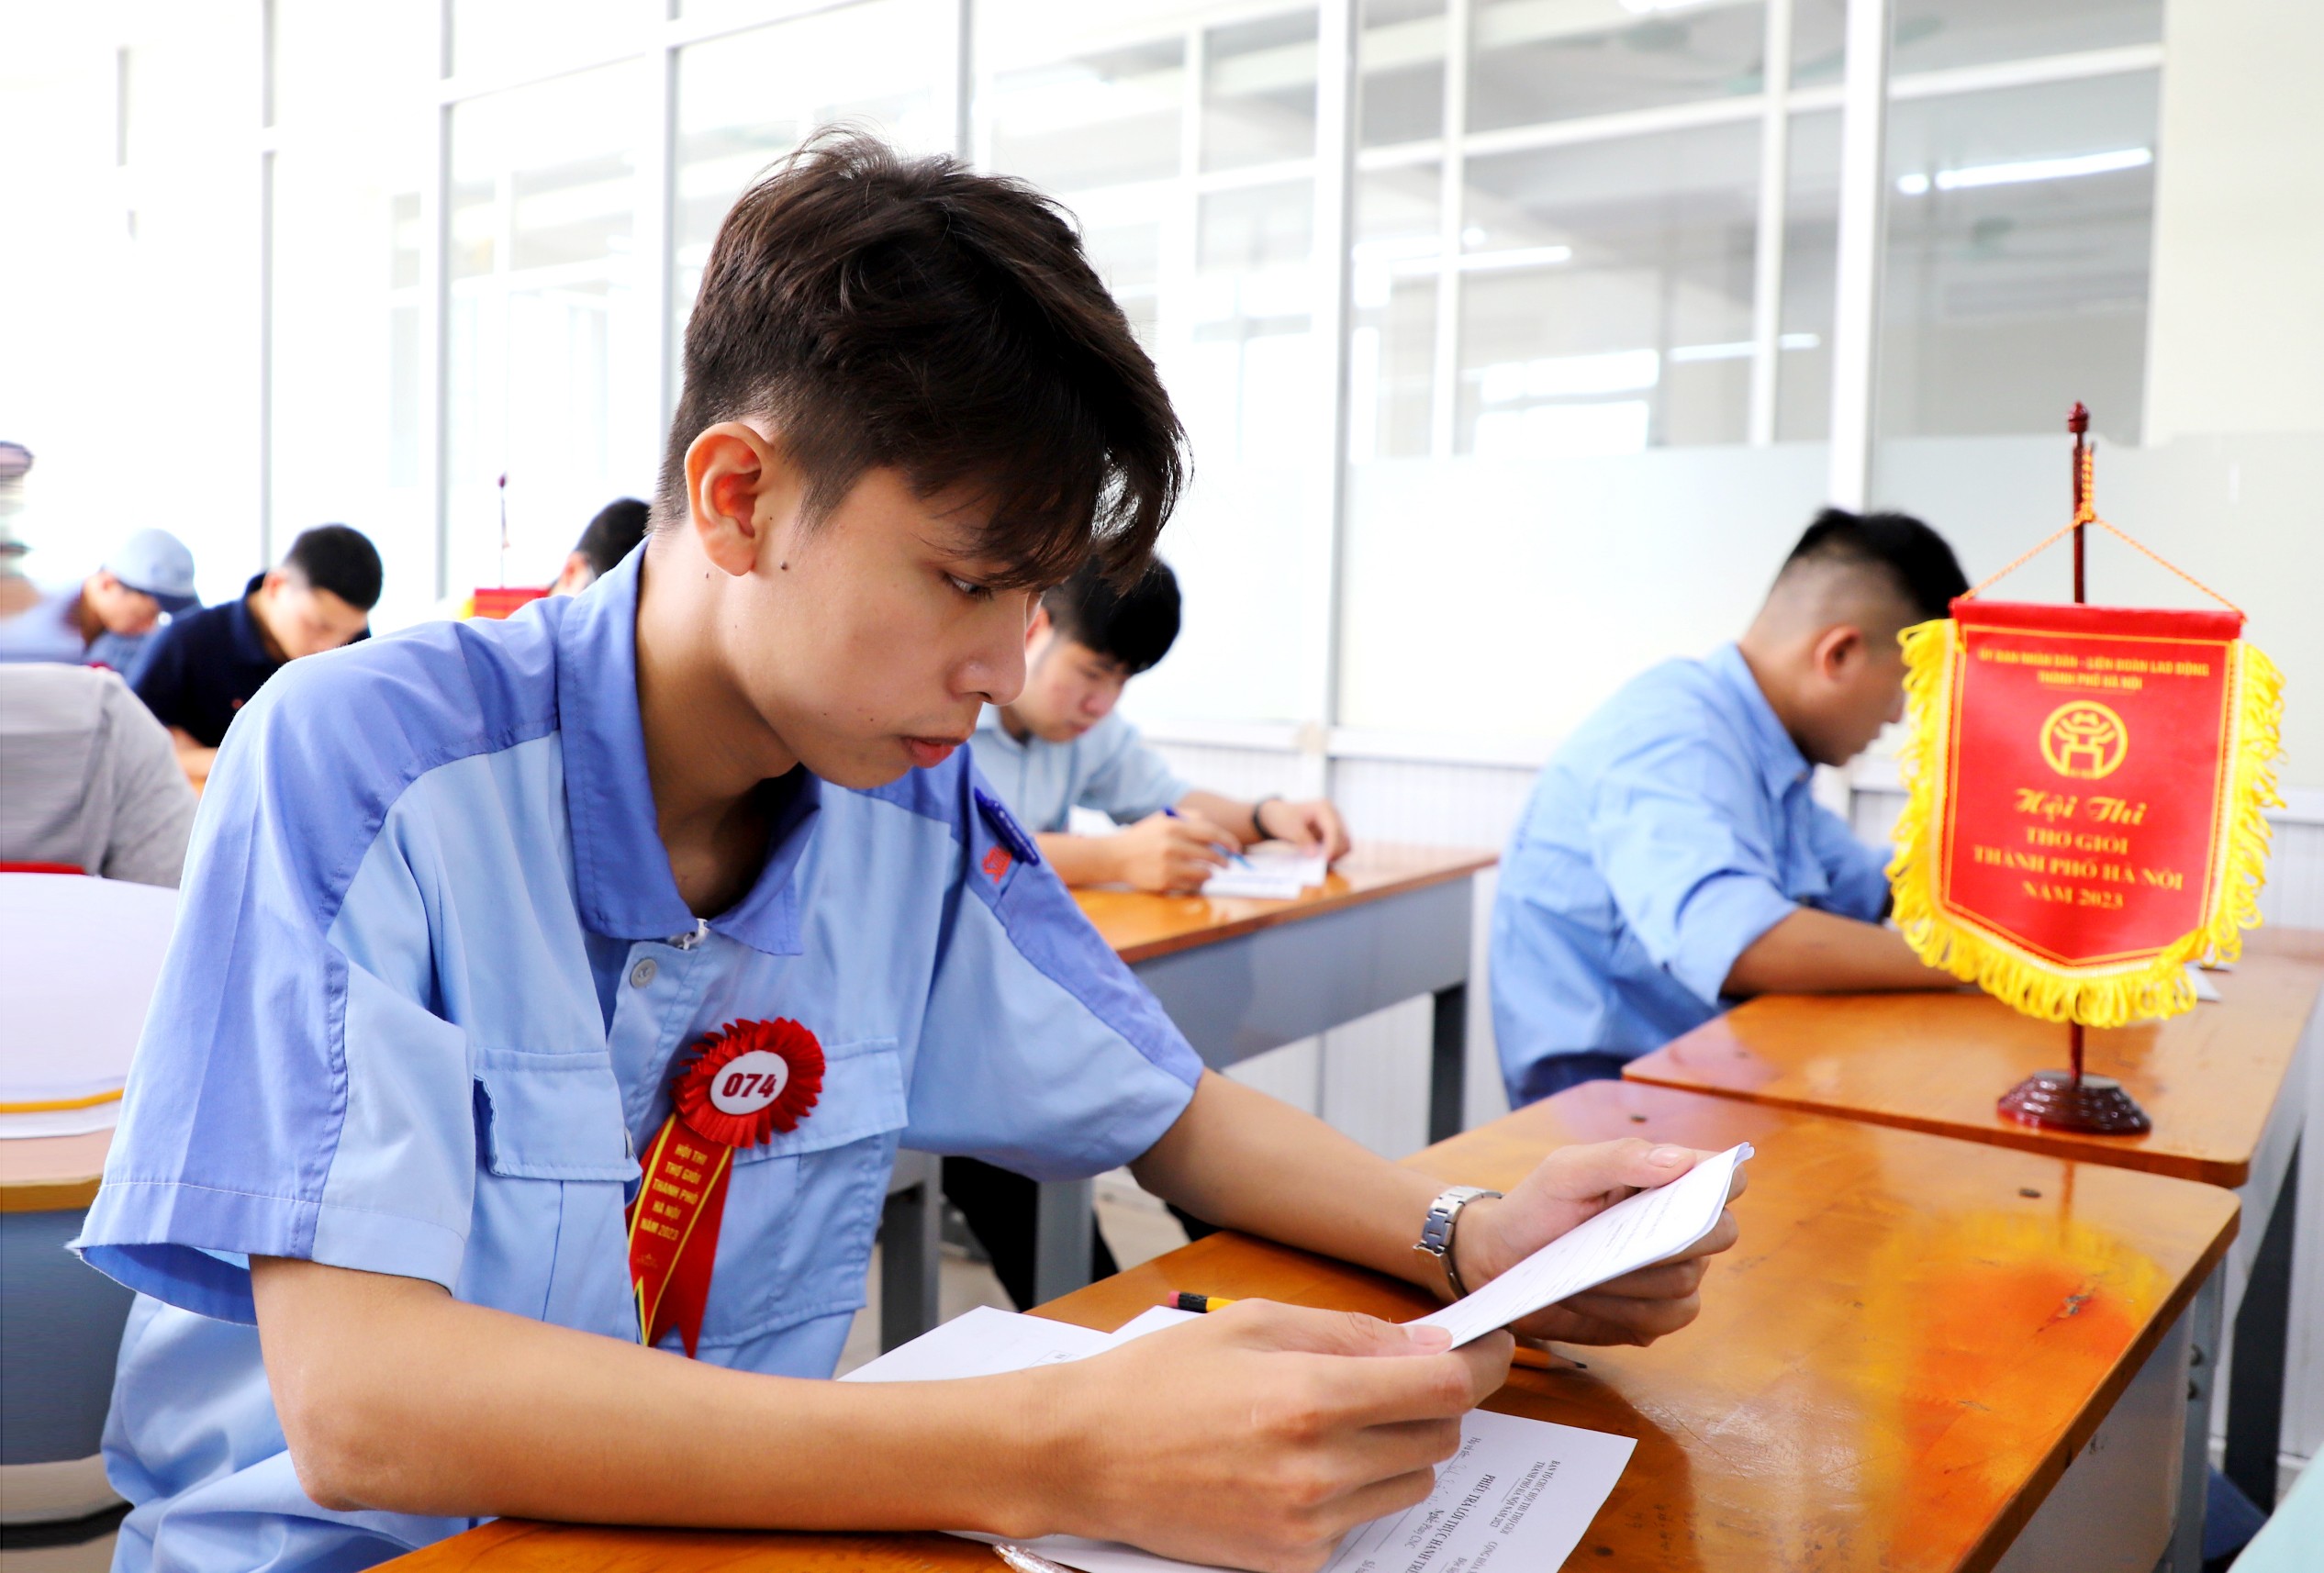 Công nhân Trịnh Tuấn Hưng đến từ Công ty TNHH Điện Stanley Việt Nam đang tập trung làm bài thi thực hành trên giấy nội dung Phay CNC tại Hội thi thợ giỏi thành phố Hà Nội năm 2023.